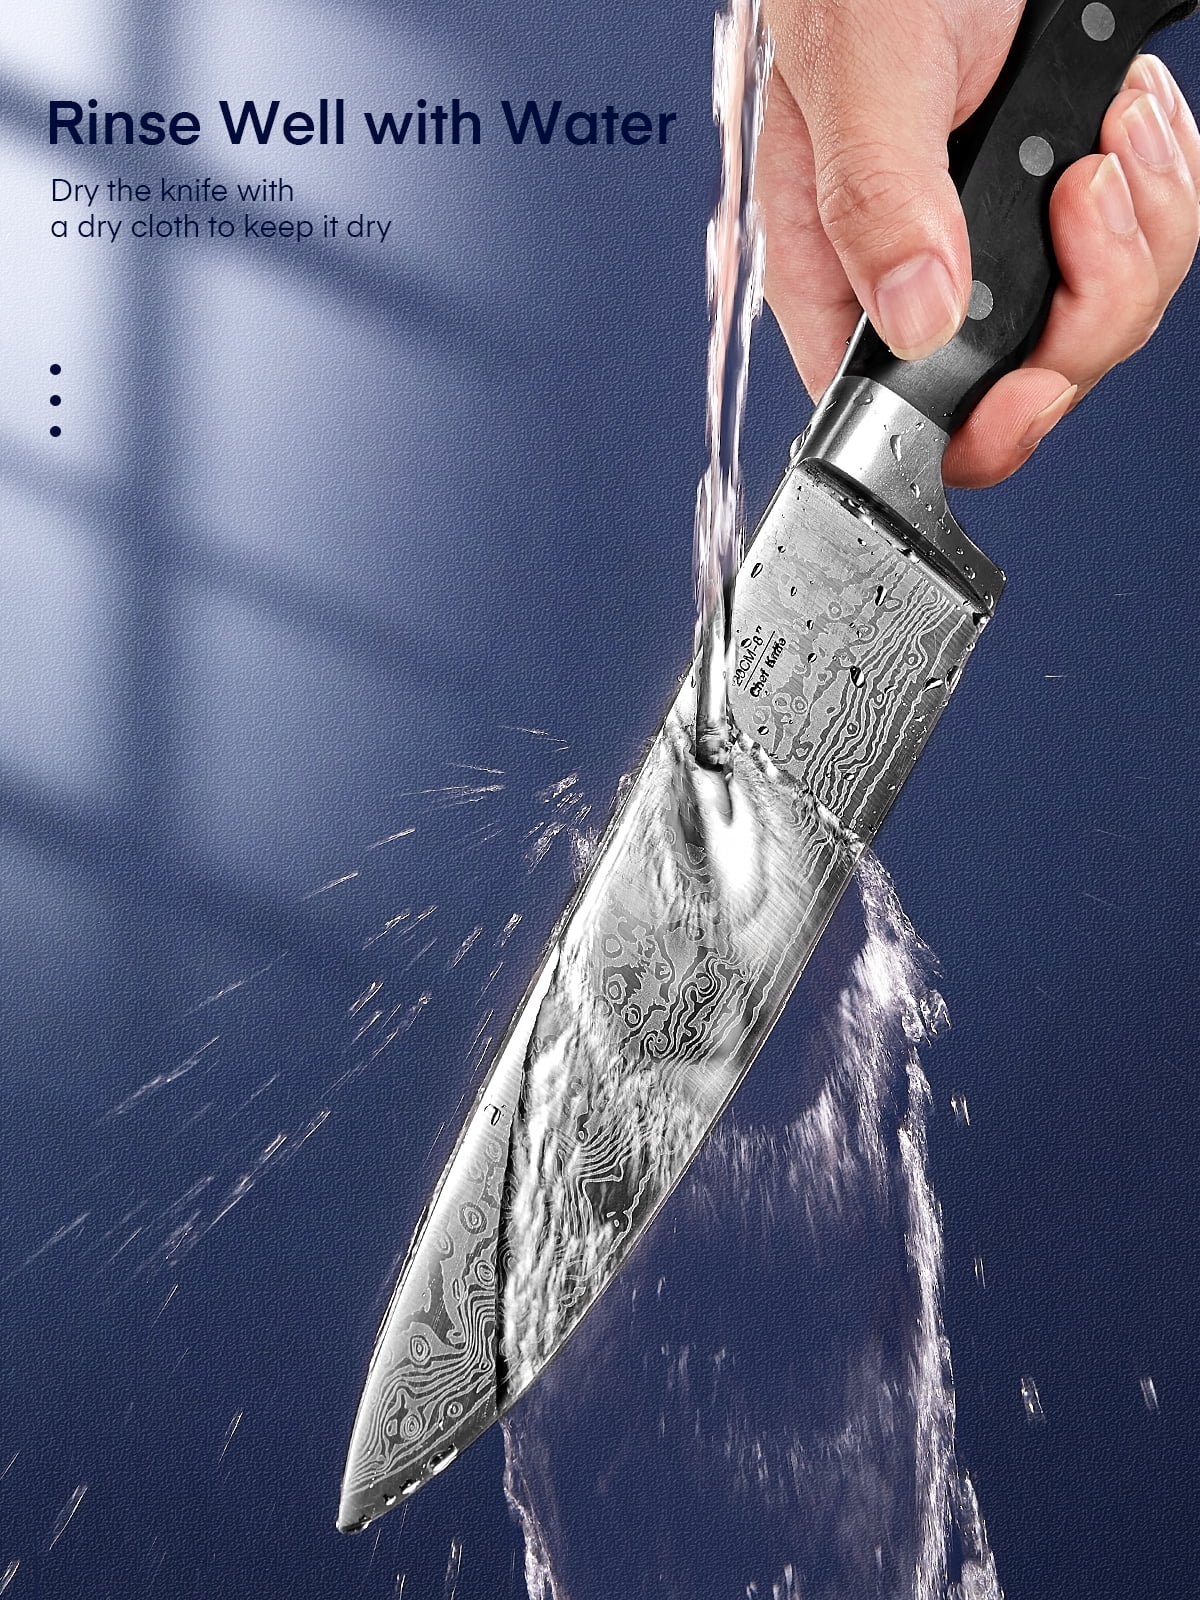 D.Perlla Steak Knives, Super Sharp Straight Edge Steak Knife Set of 8,  Professional Straight Edge Kitchen Table Dinner Knives, Elegant High Carbon